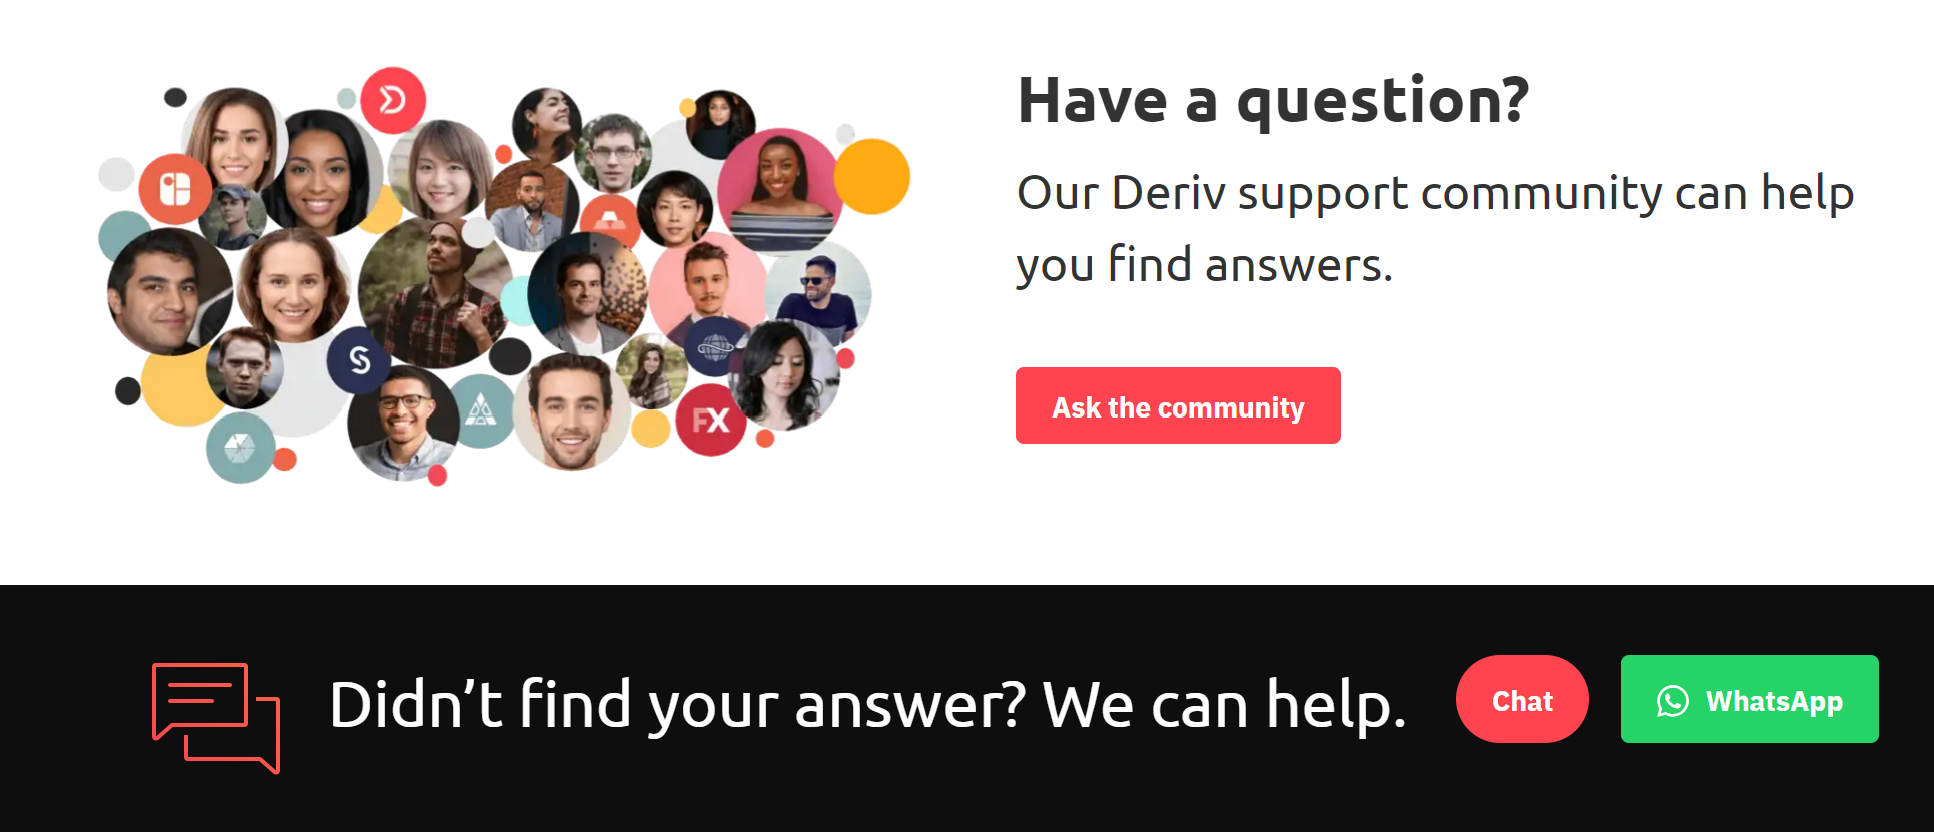 deriv_customer_support